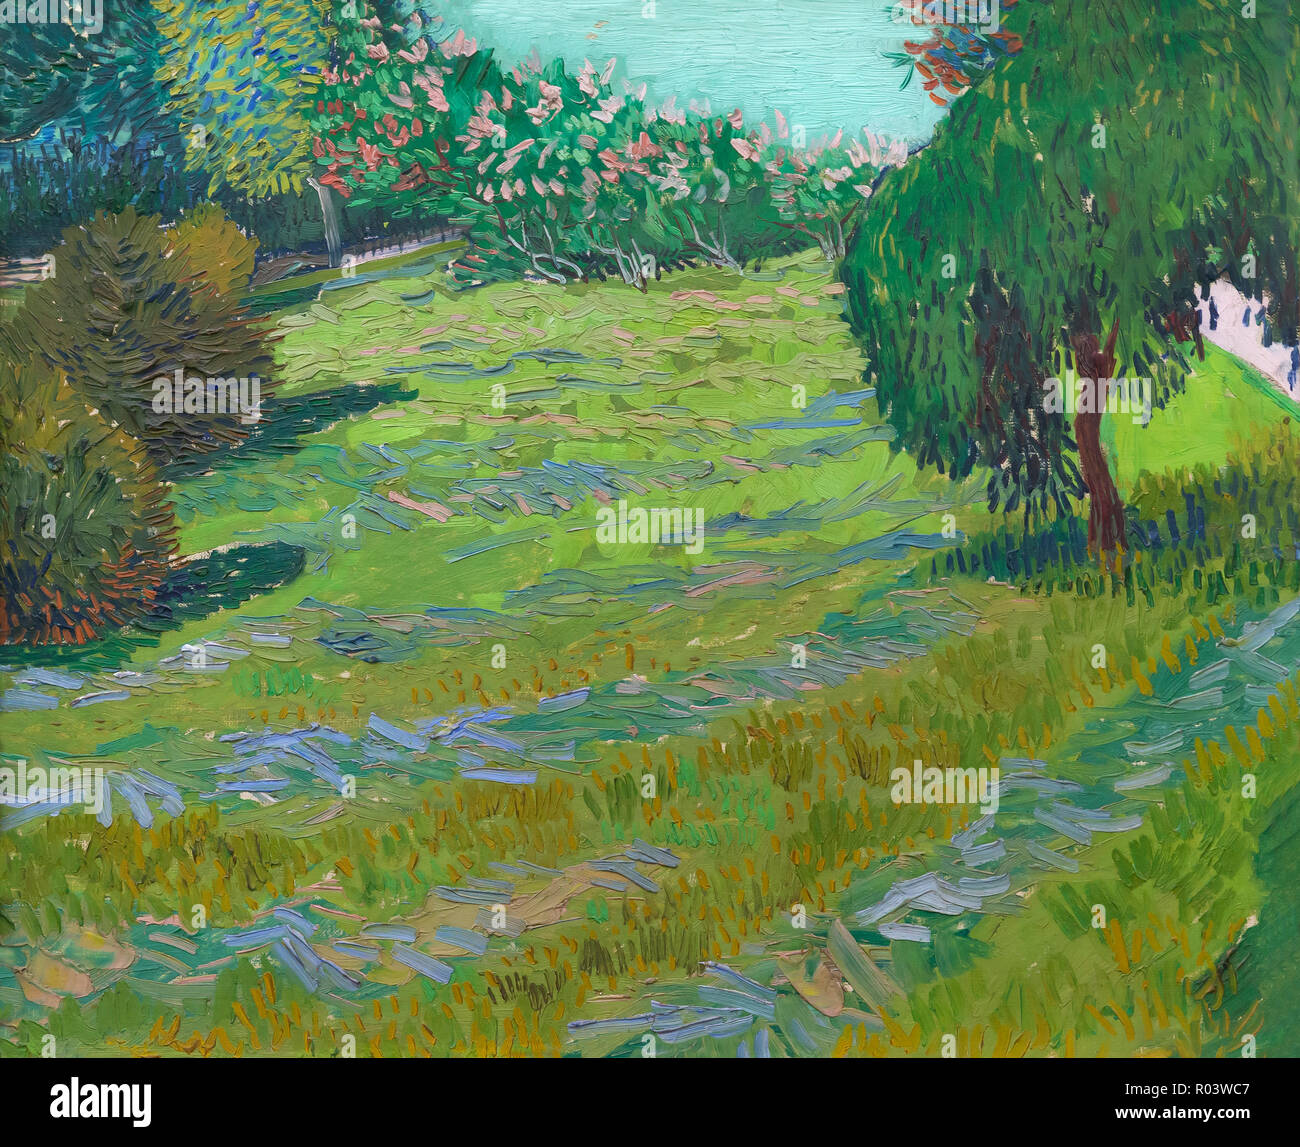 Garten mit Trauerweide, sonnigen Rasen in einem öffentlichen Park, Arles, Vincent van Gogh, 1888, Zürich, Kunsthaus, Zürich, Schweiz, Europa Stockfoto